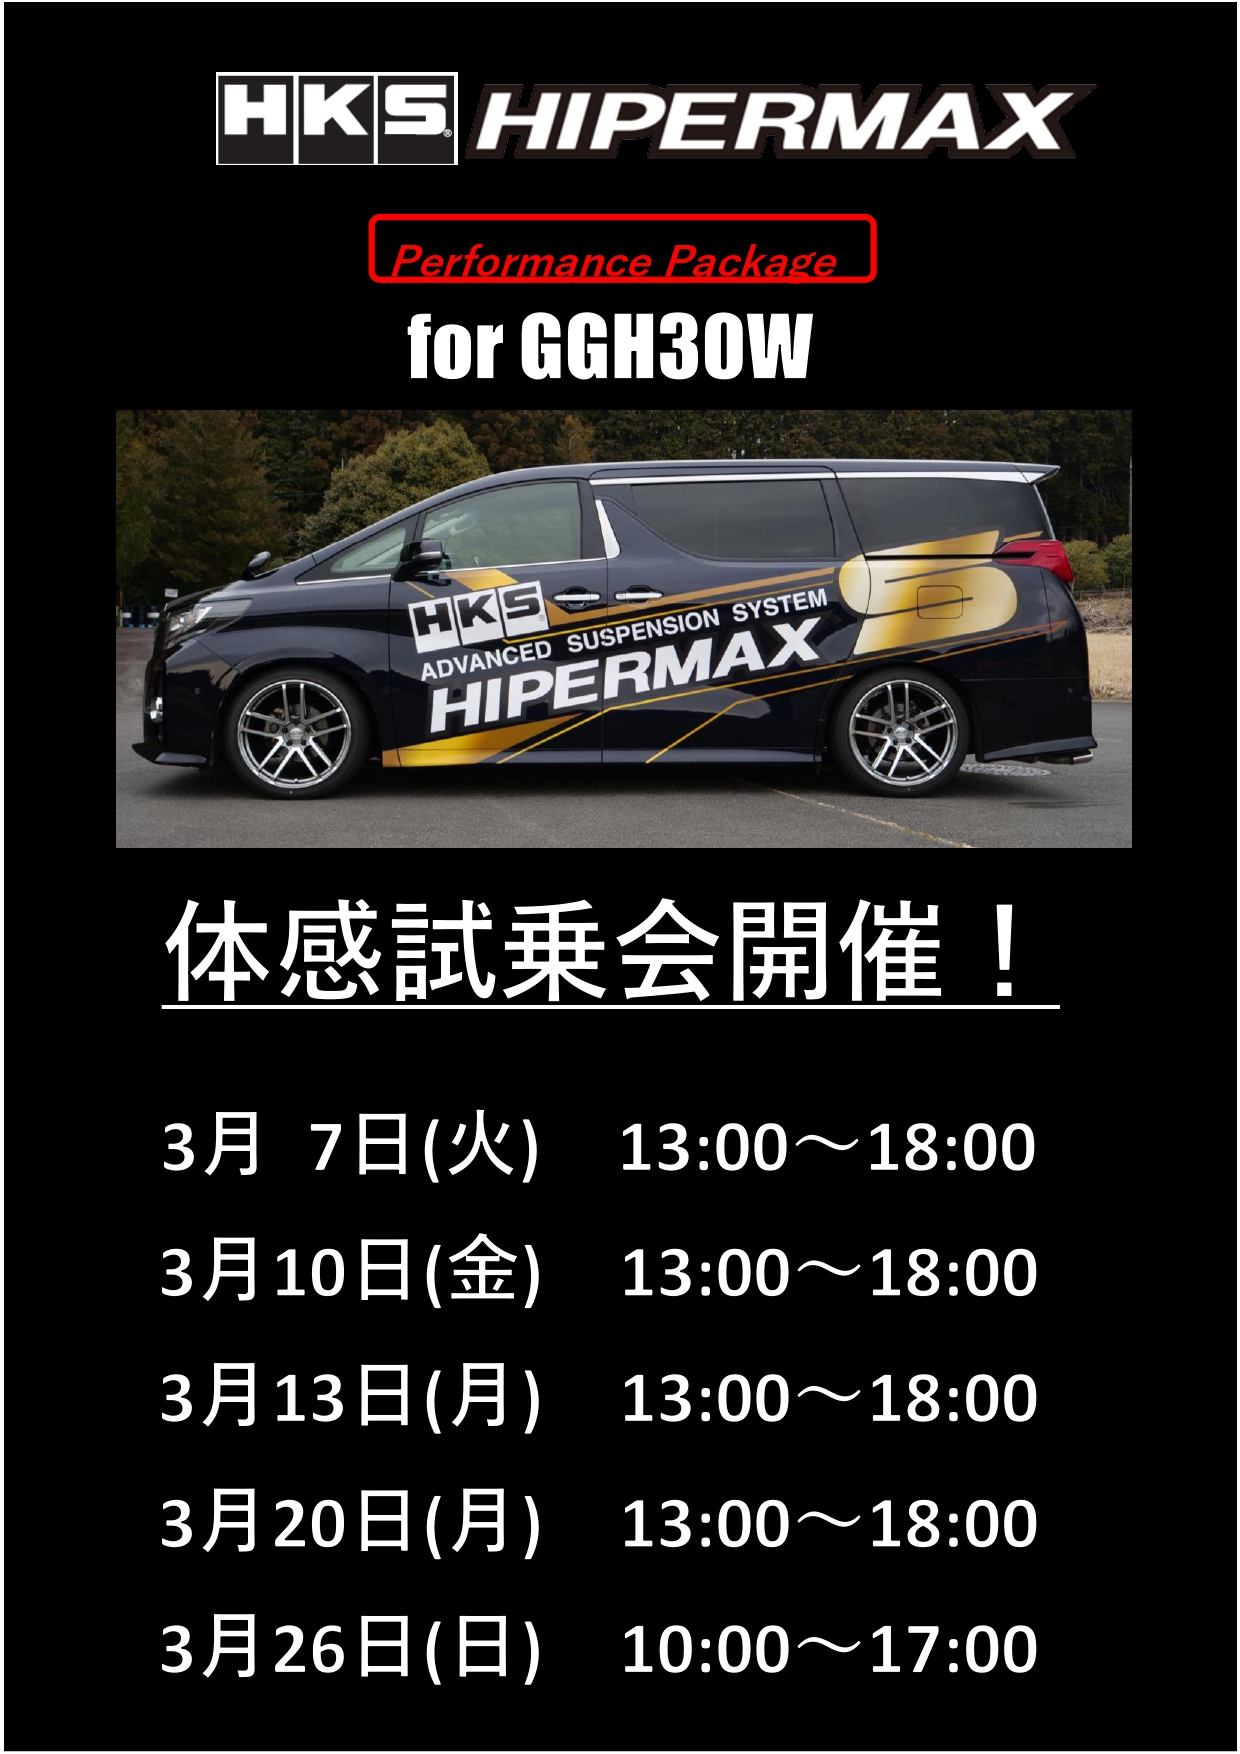 3/7.10.13.20.26 HIPERMAX Performance Package 試乗会